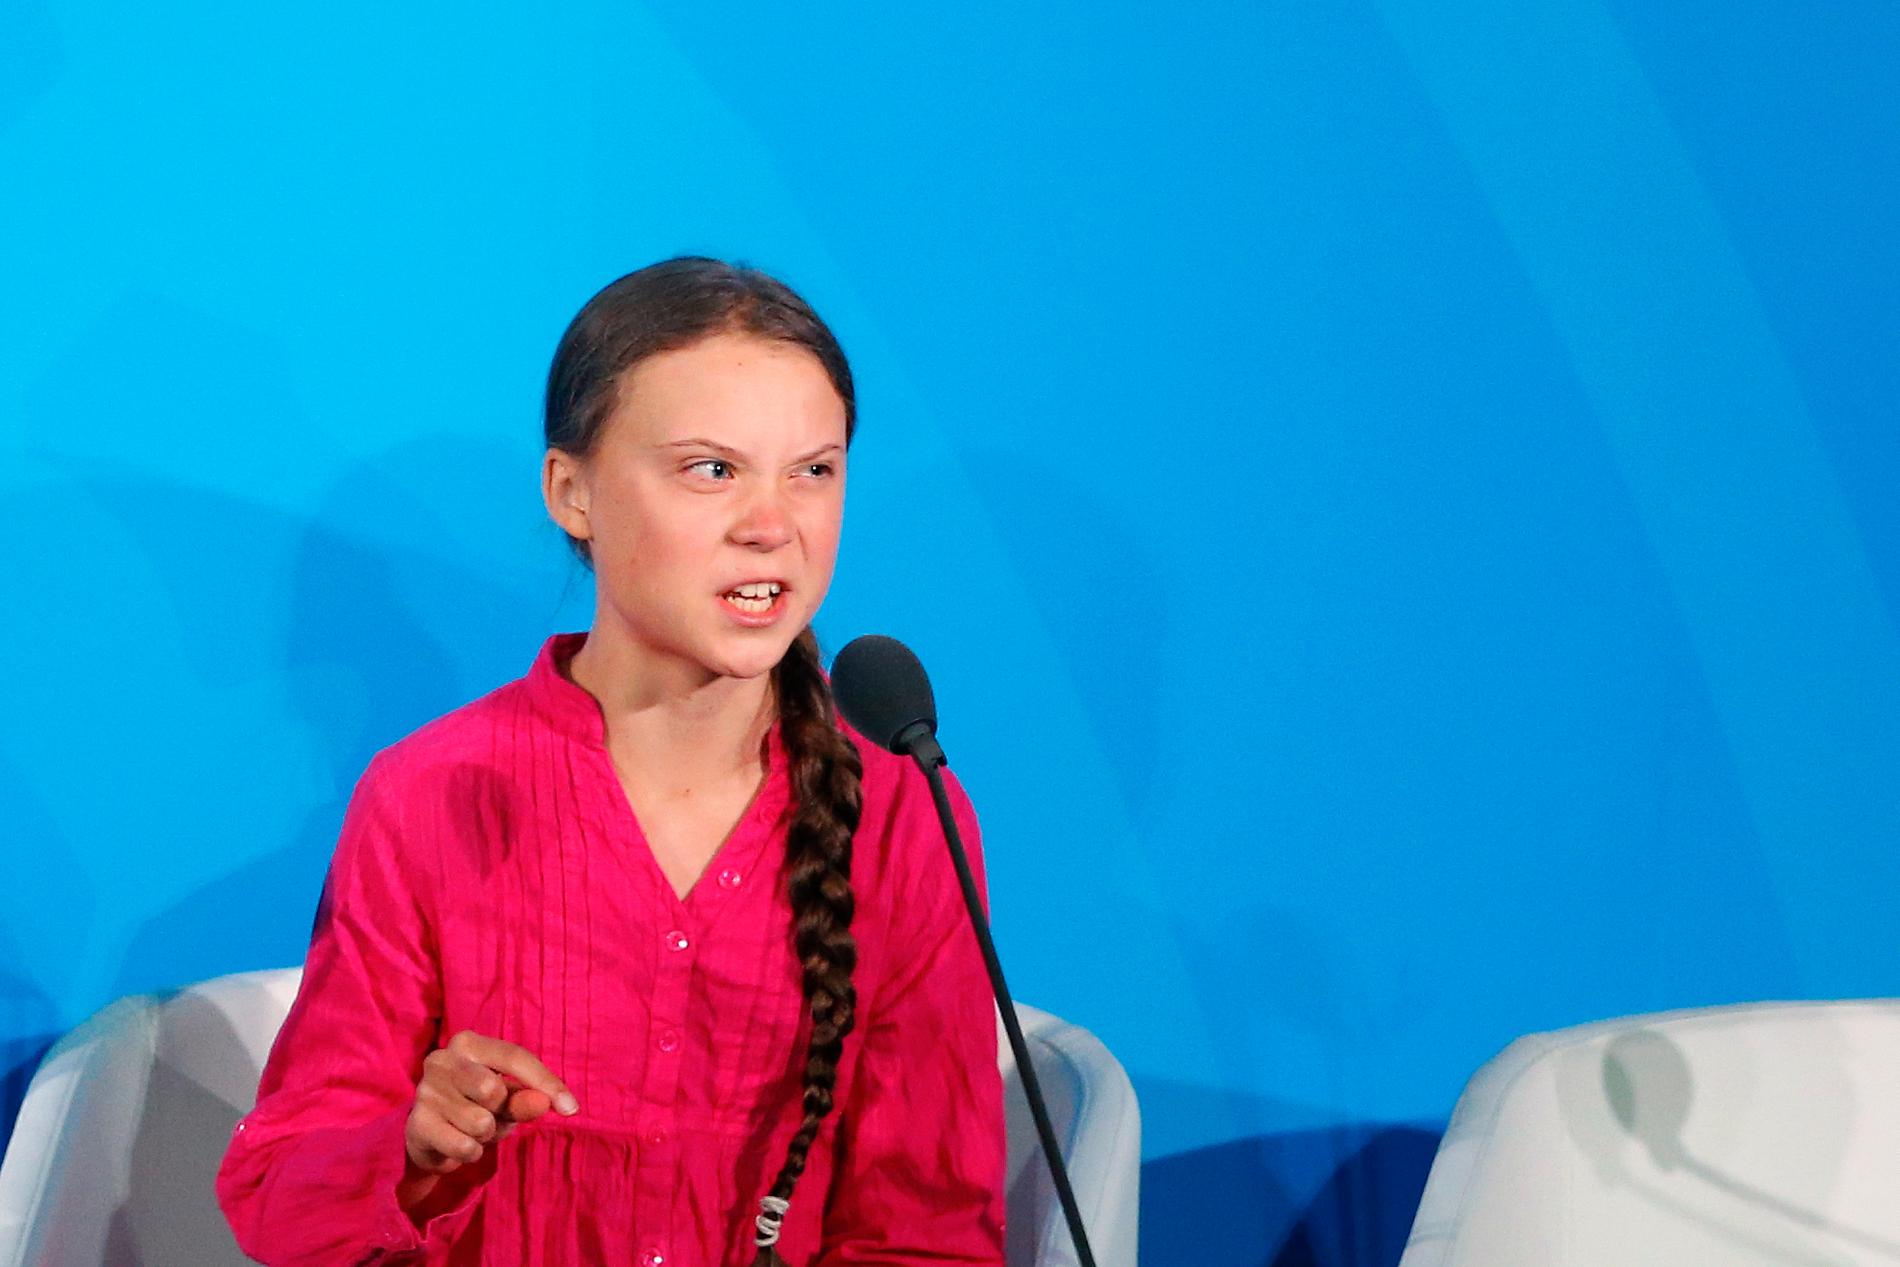 Klimataktivisten Greta Thunberg har skällt ut politiker över hela världen för att de inte gör något åt klimathotet. Men stämmer verkligen det? Henrik Ekman tror på politikens möjligheter och pekar på allt som politikerna har gjort för miljön och naturen. Arkivbild.